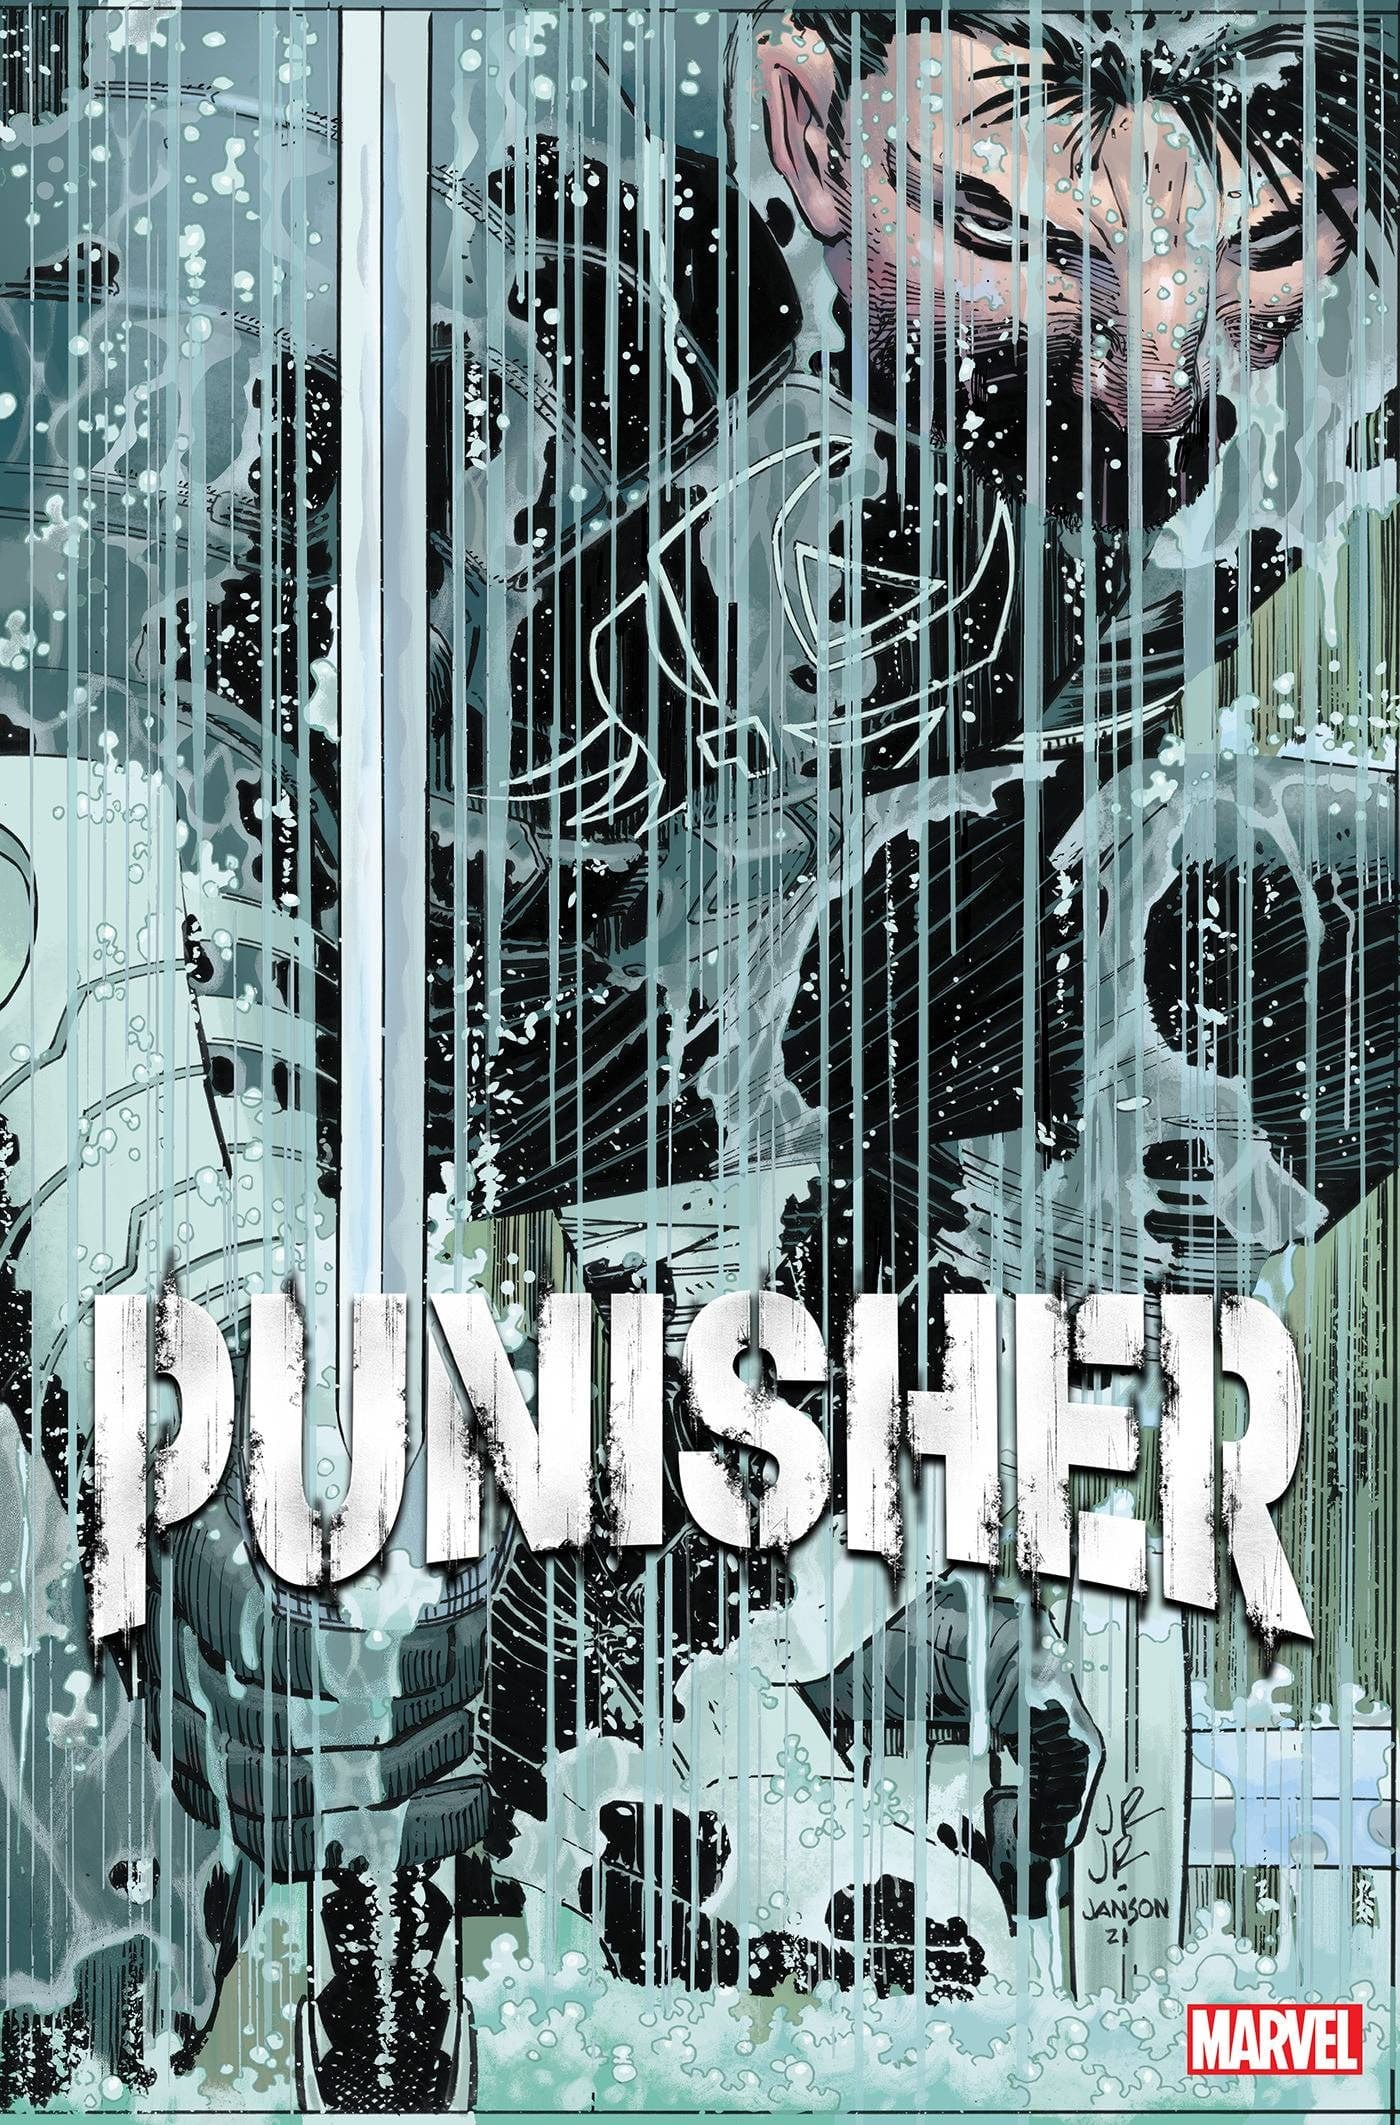 Punisher  Punisher marvel, Punisher comics, Punisher